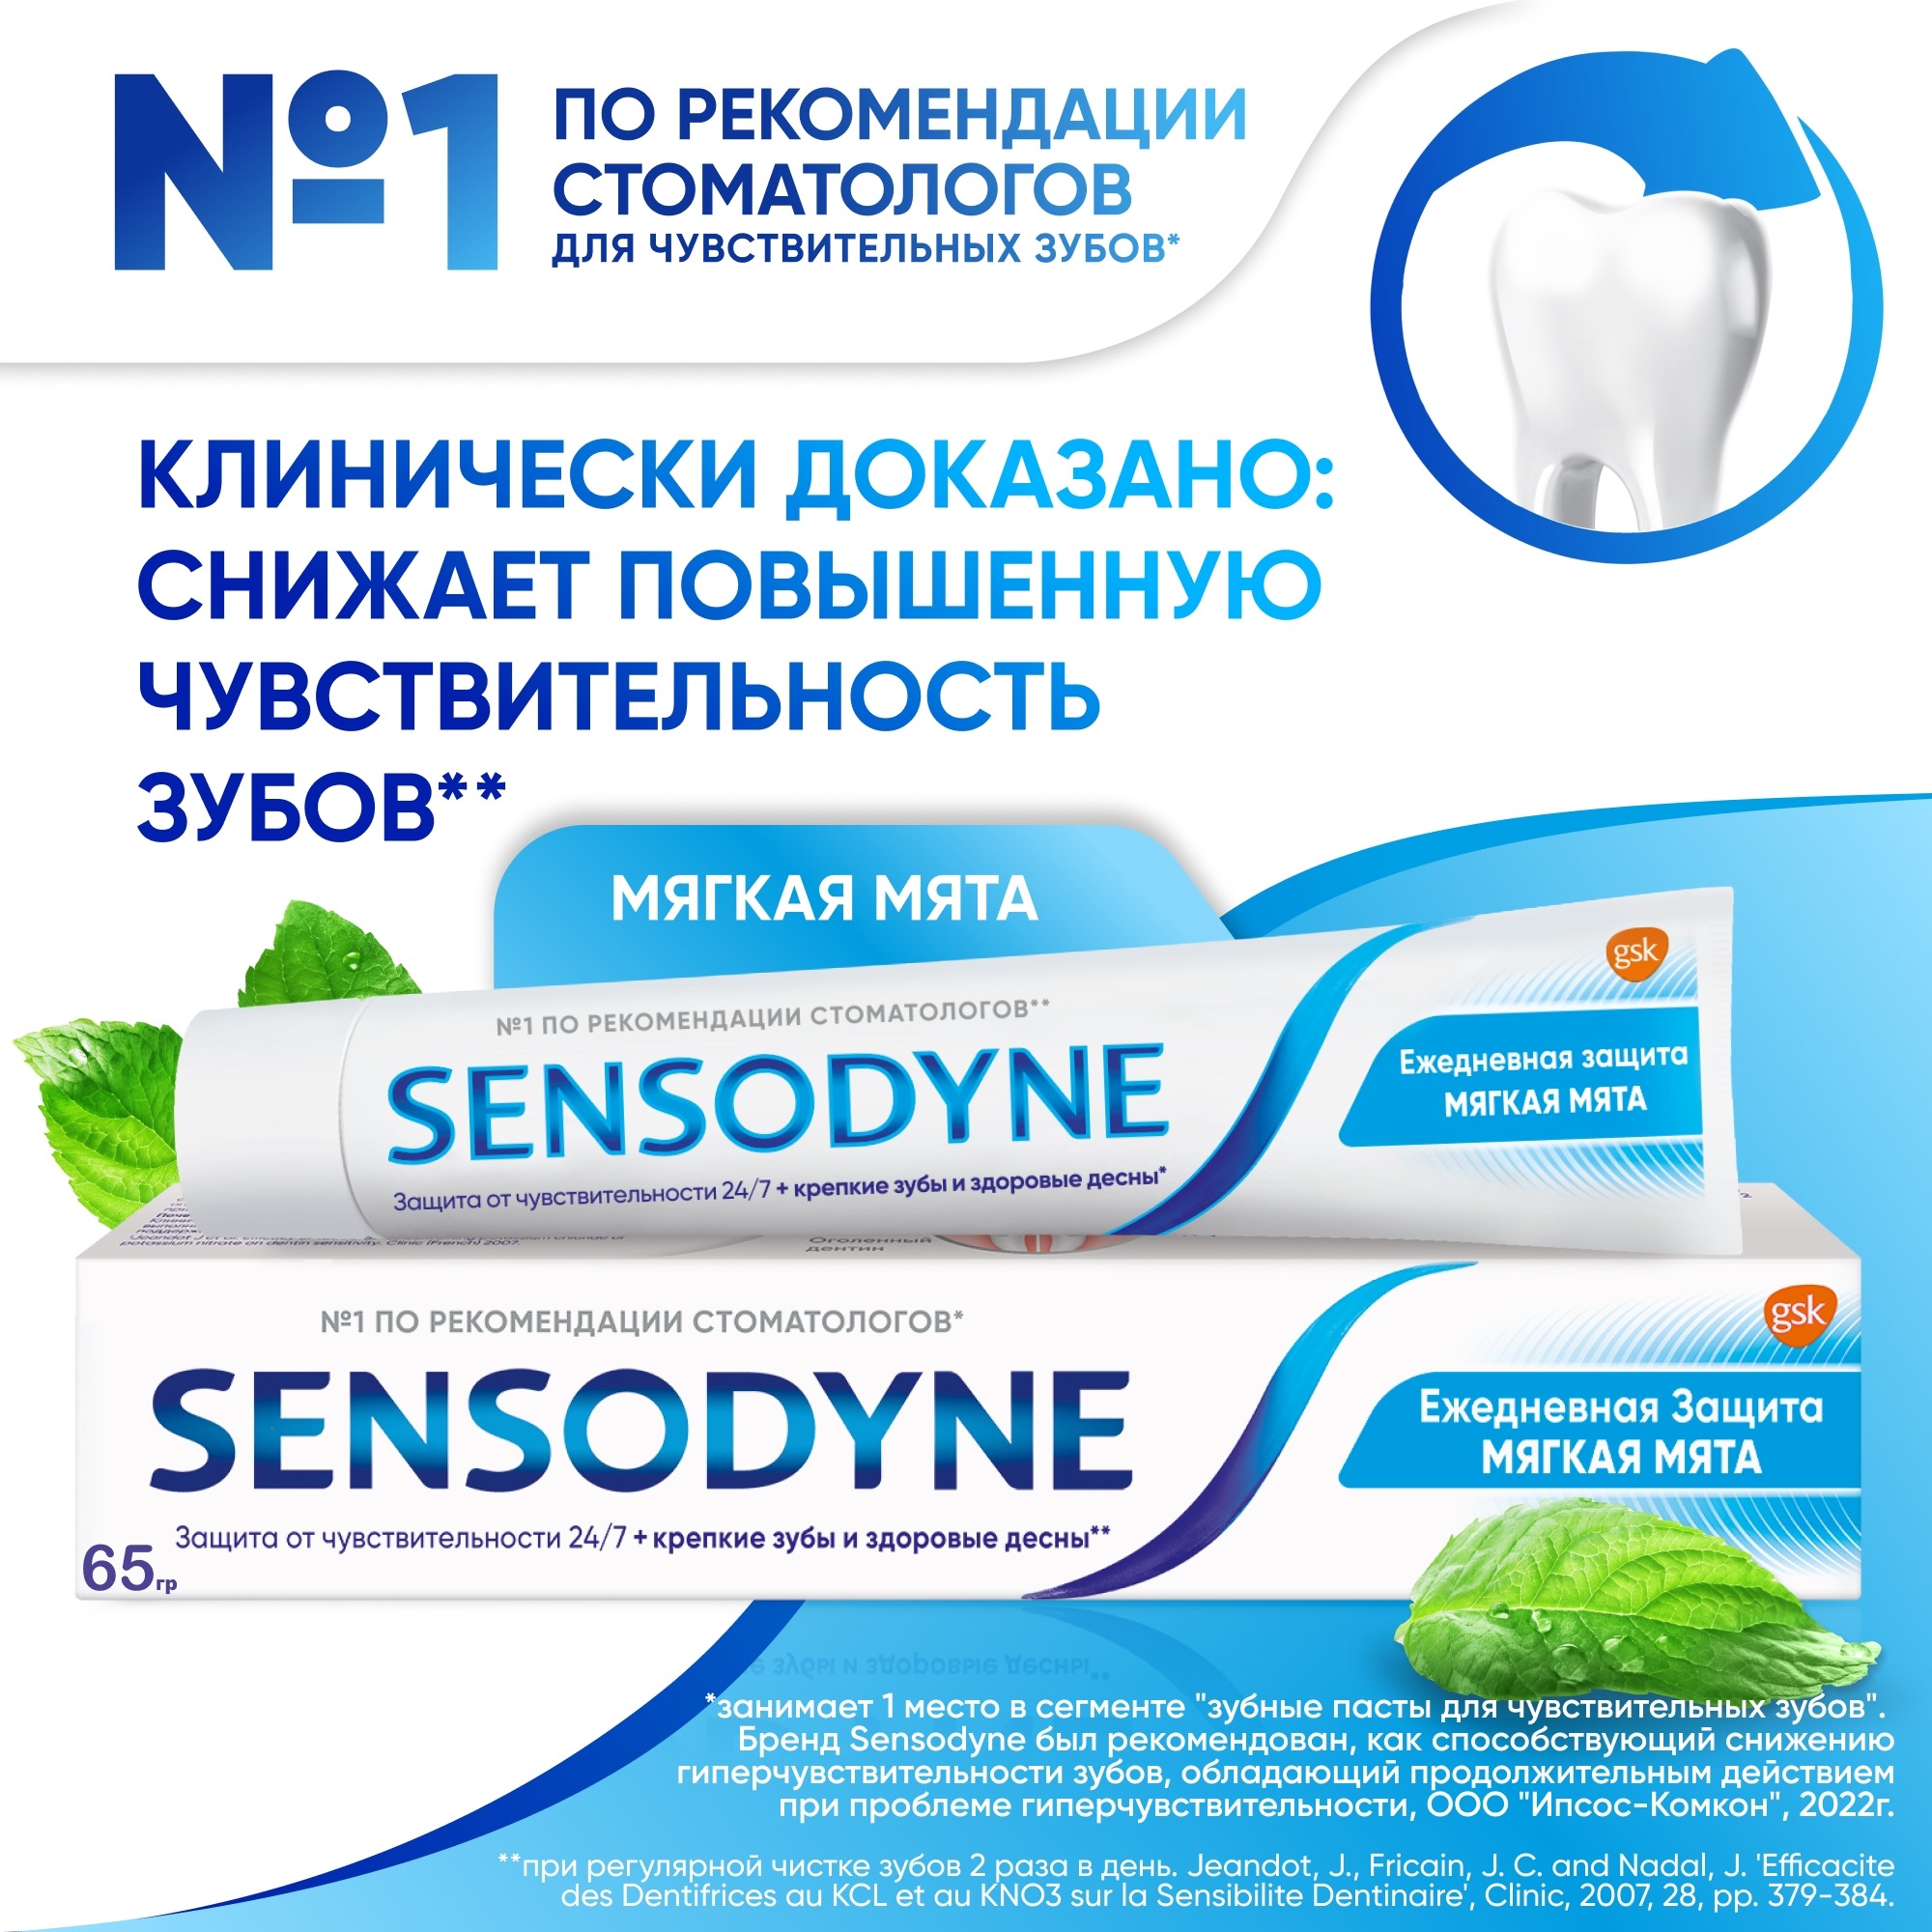 Зубная паста Sensodyne Ежедневная защита Мягкаямята 65 г - фото 2